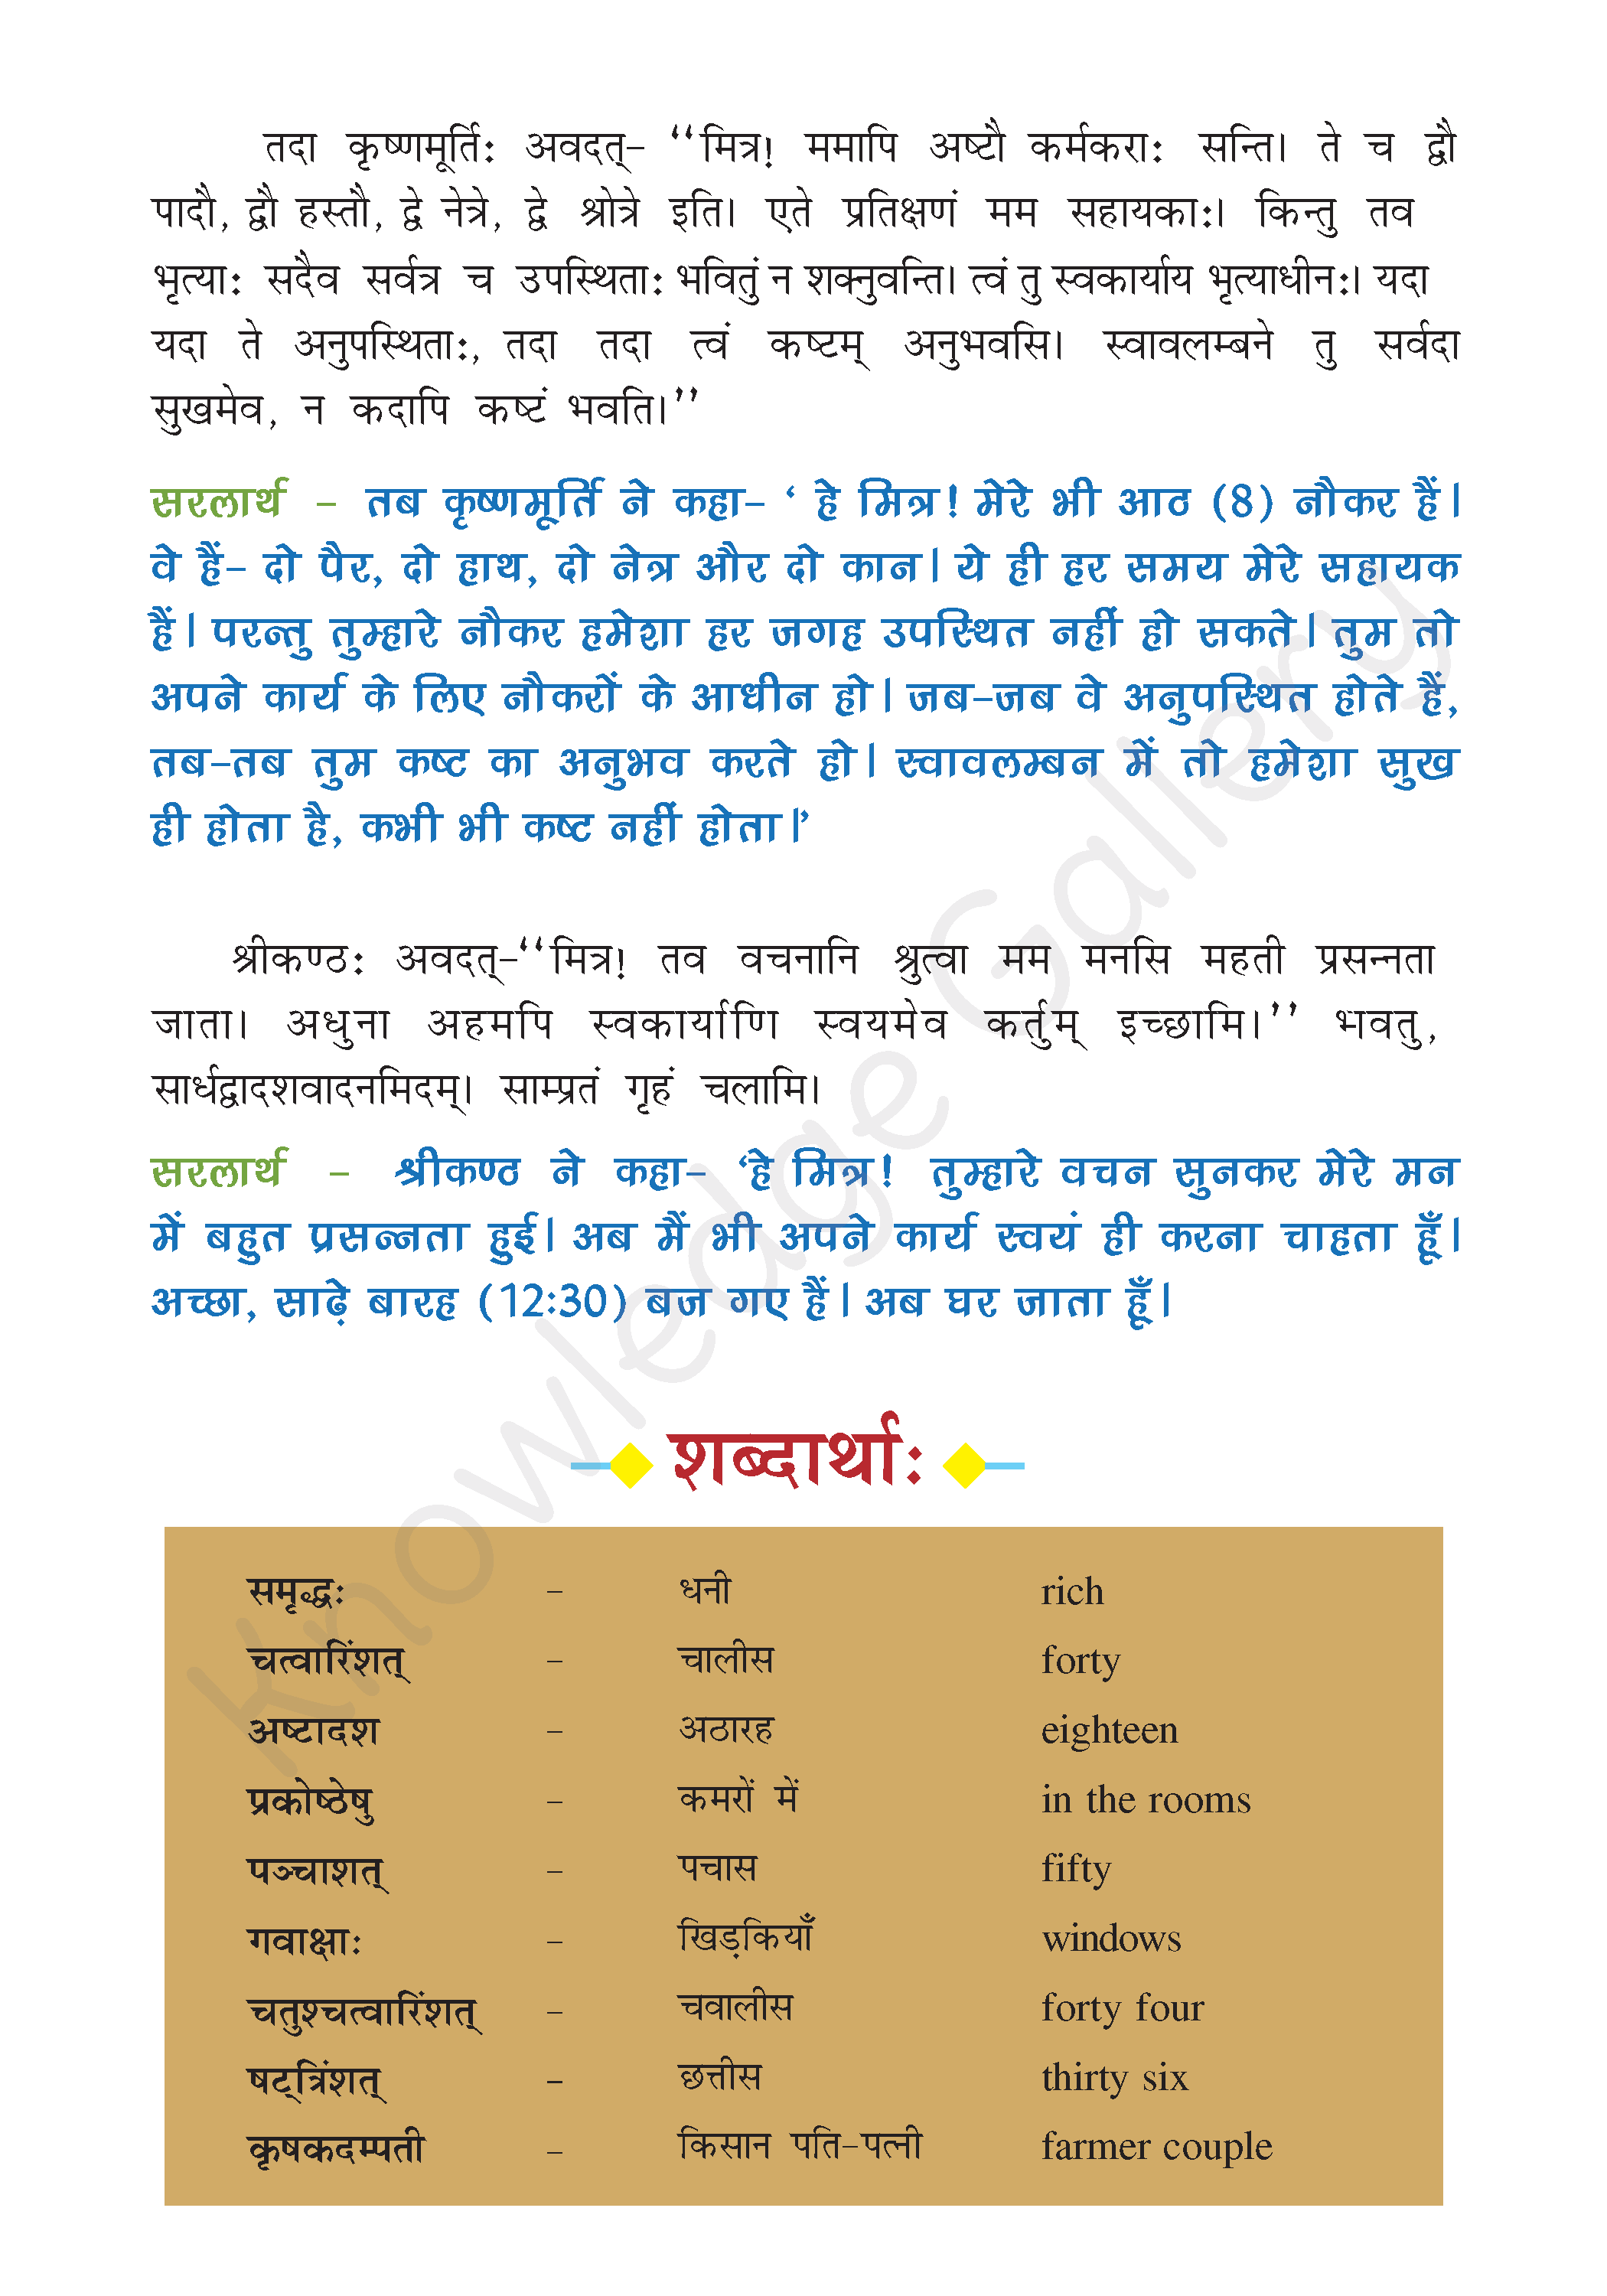 NCERT Solution For Class 7 Sanskrit Chapter 3 part 2